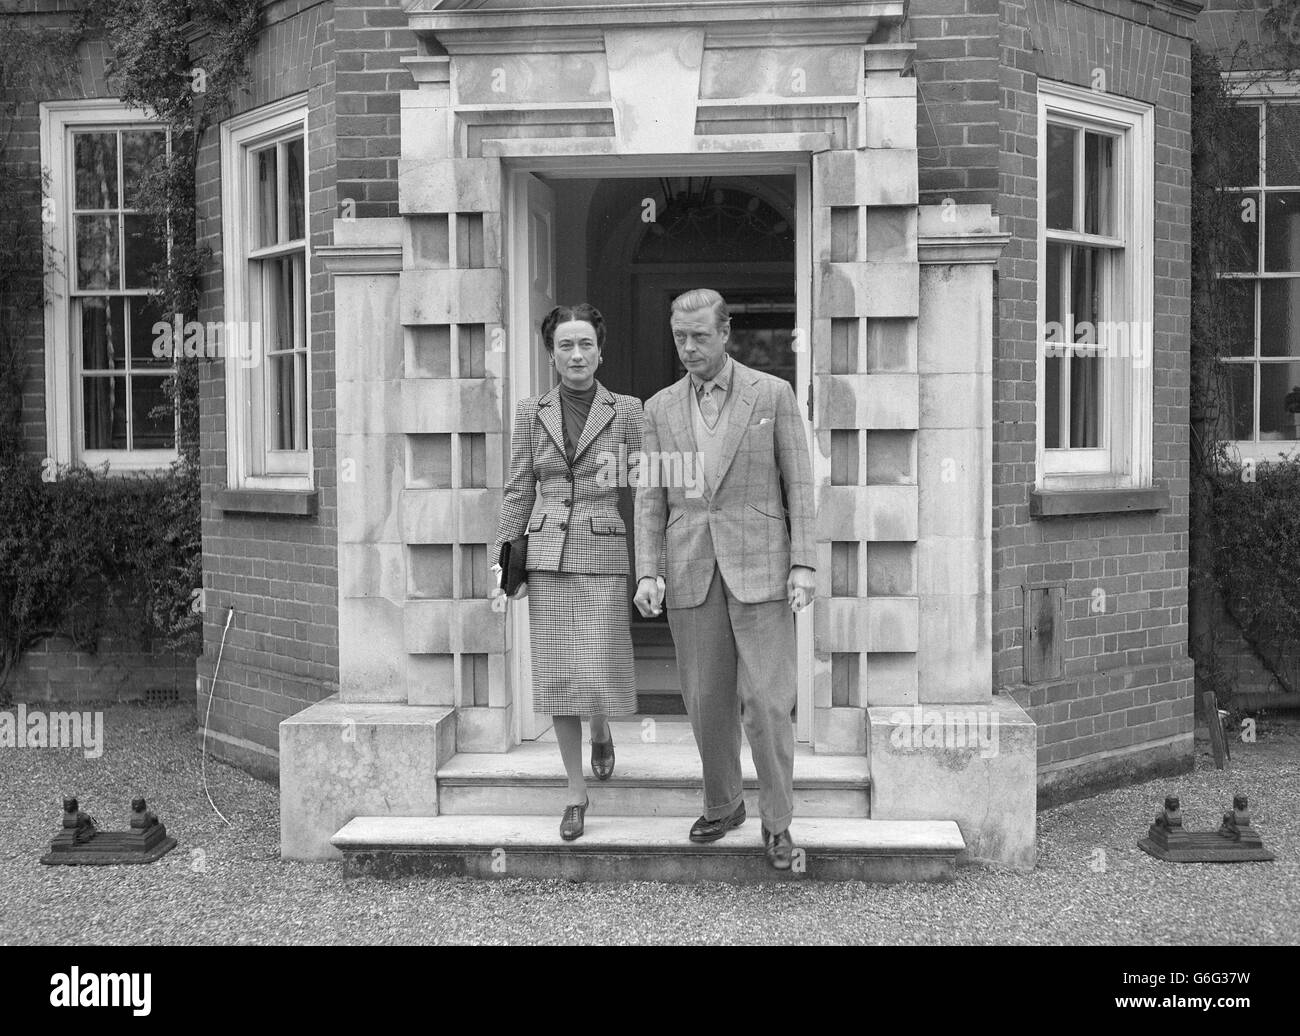 Il Duca e la Duchessa di Windsor, arrivati in campagna da Parigi la notte scorsa, stanno alloggiando all'Ednam Lodge, Sunningdale, Berks, come ospiti di Lord Dudley. Il Duca e la Duchessa sono in Inghilterra insieme per la prima volta dal 1939. Foto Stock